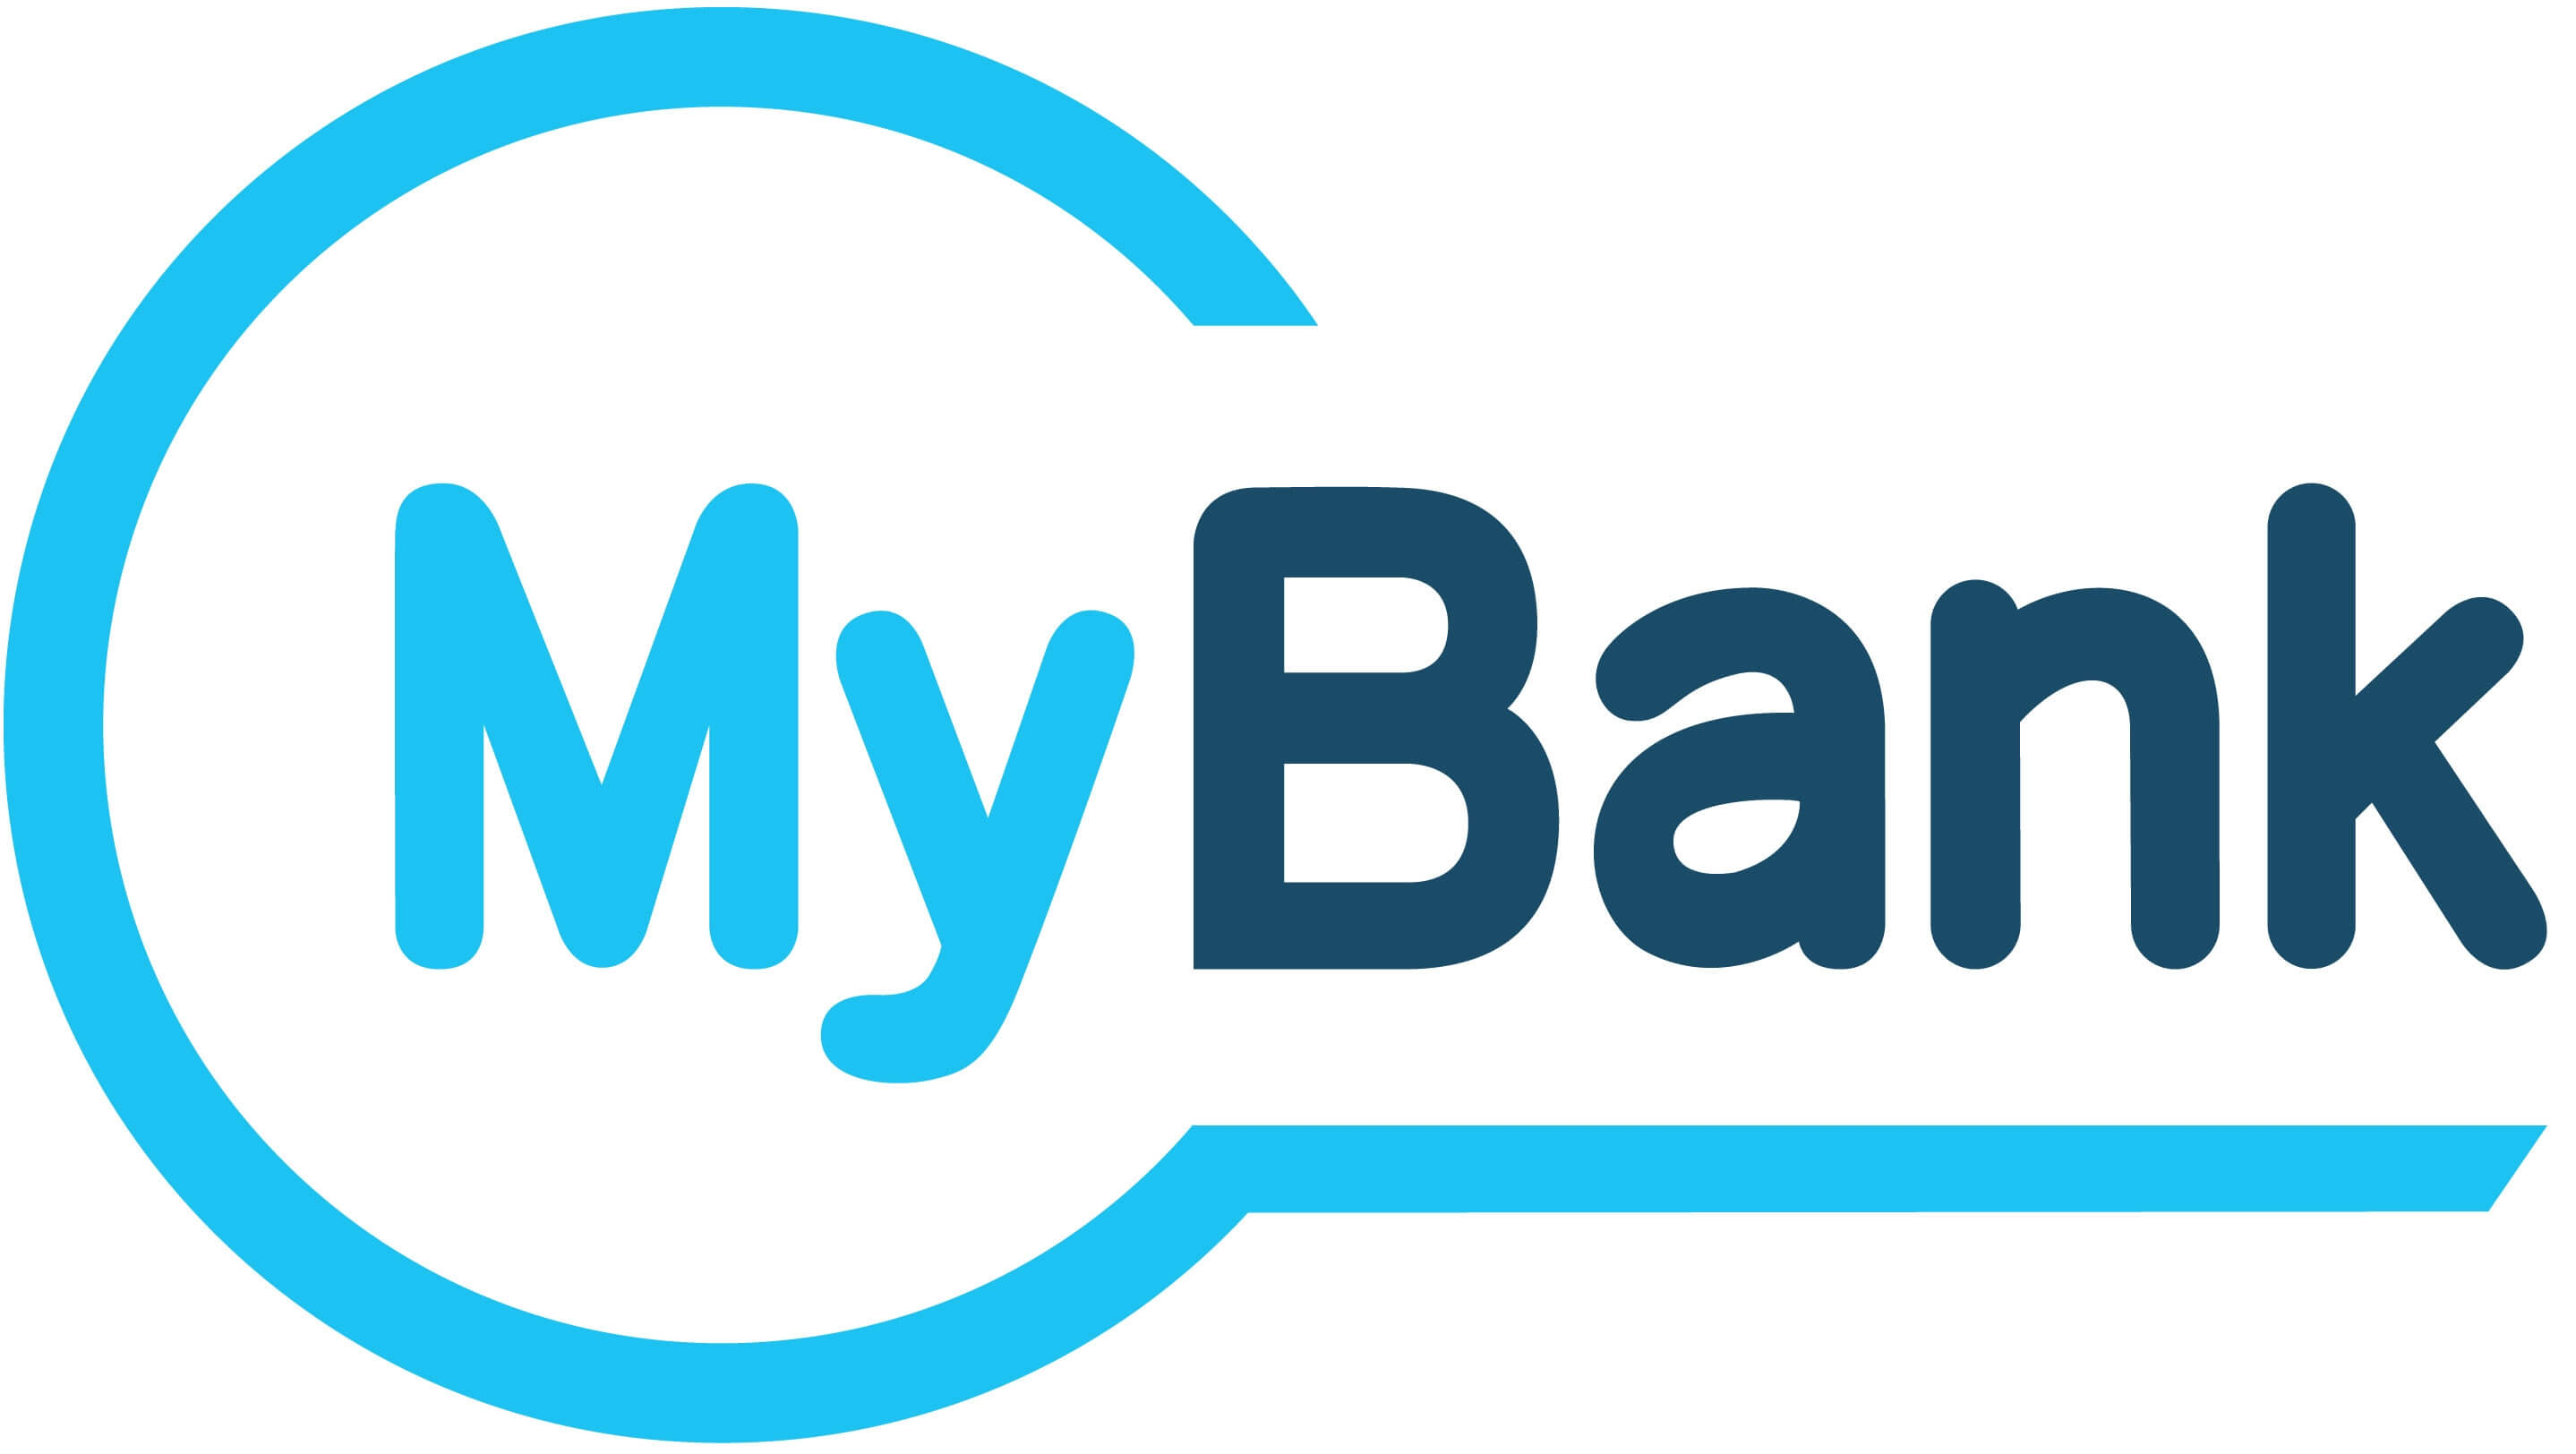 Oltre 1 miliardo di transazioni per MyBank - Pagamenti Digitali